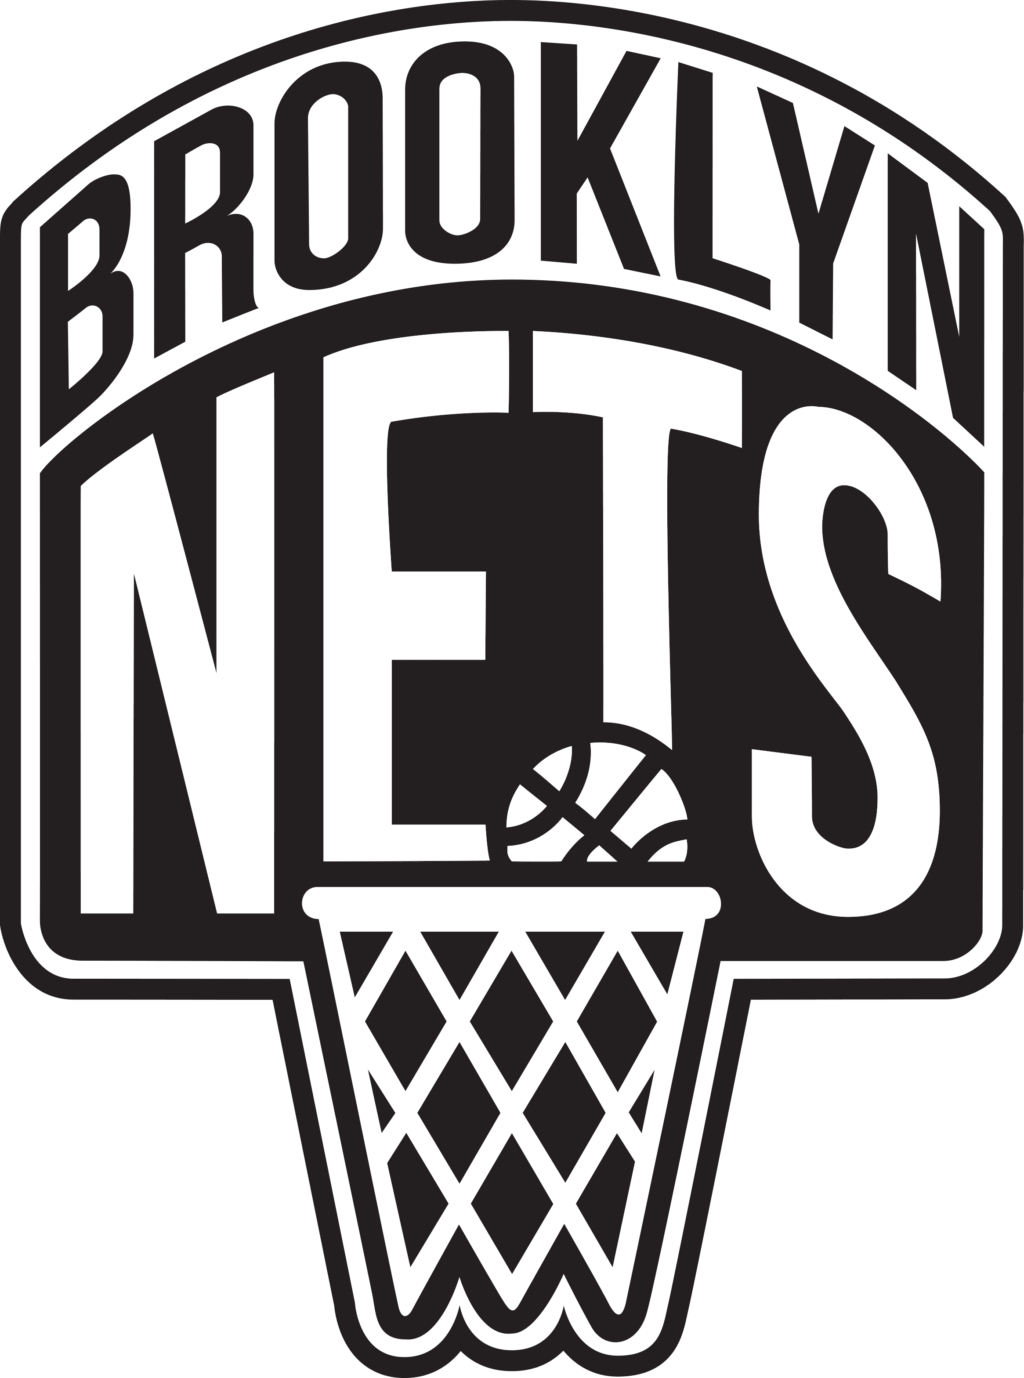 brooklyn nets 09 NBA Logo Brooklyn Nets, Brooklyn Nets SVG, Vector Brooklyn Nets Clipart Brooklyn Nets, Basketball Kit Brooklyn Nets, SVG, DXF, PNG, Basketball Logo Vector Brooklyn Nets EPS download NBA-files for silhouette, Brooklyn Nets files for clipping.